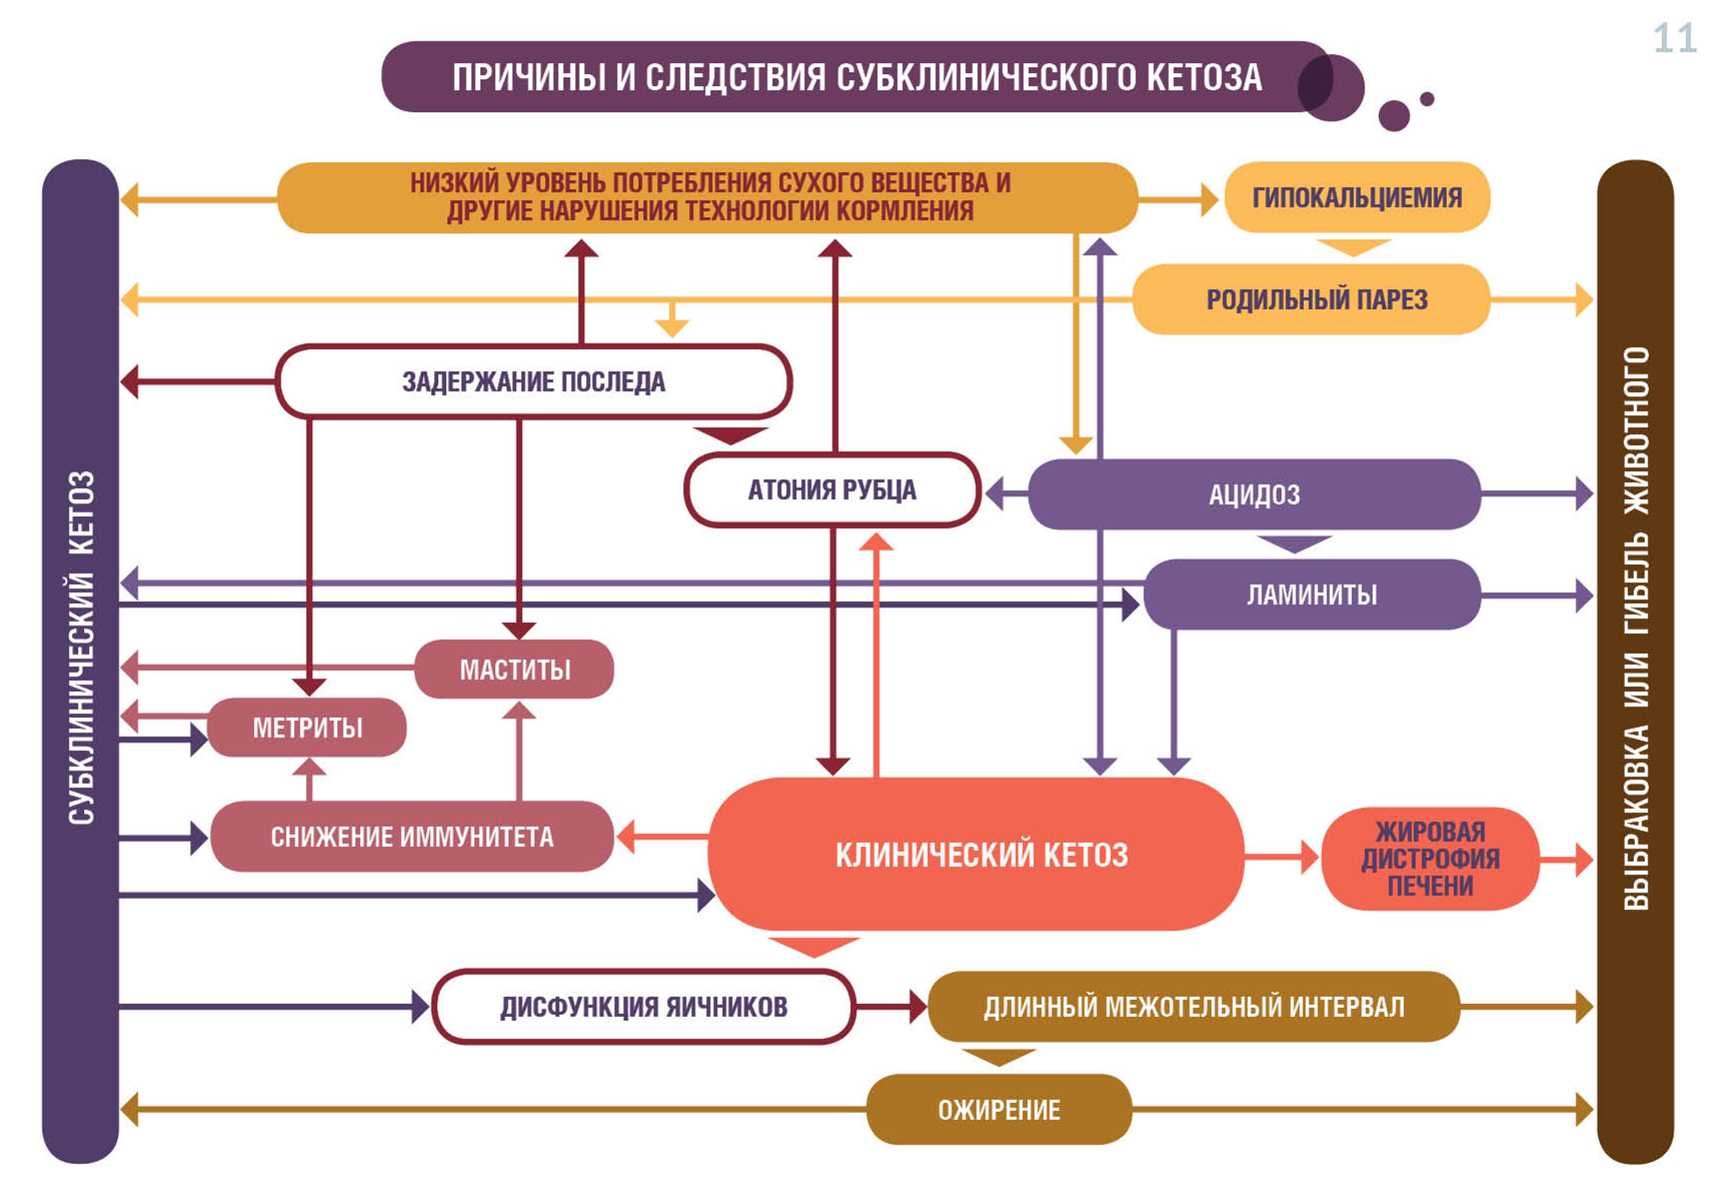 chema1 Схема профилактических мероприятий в послеотельный период 